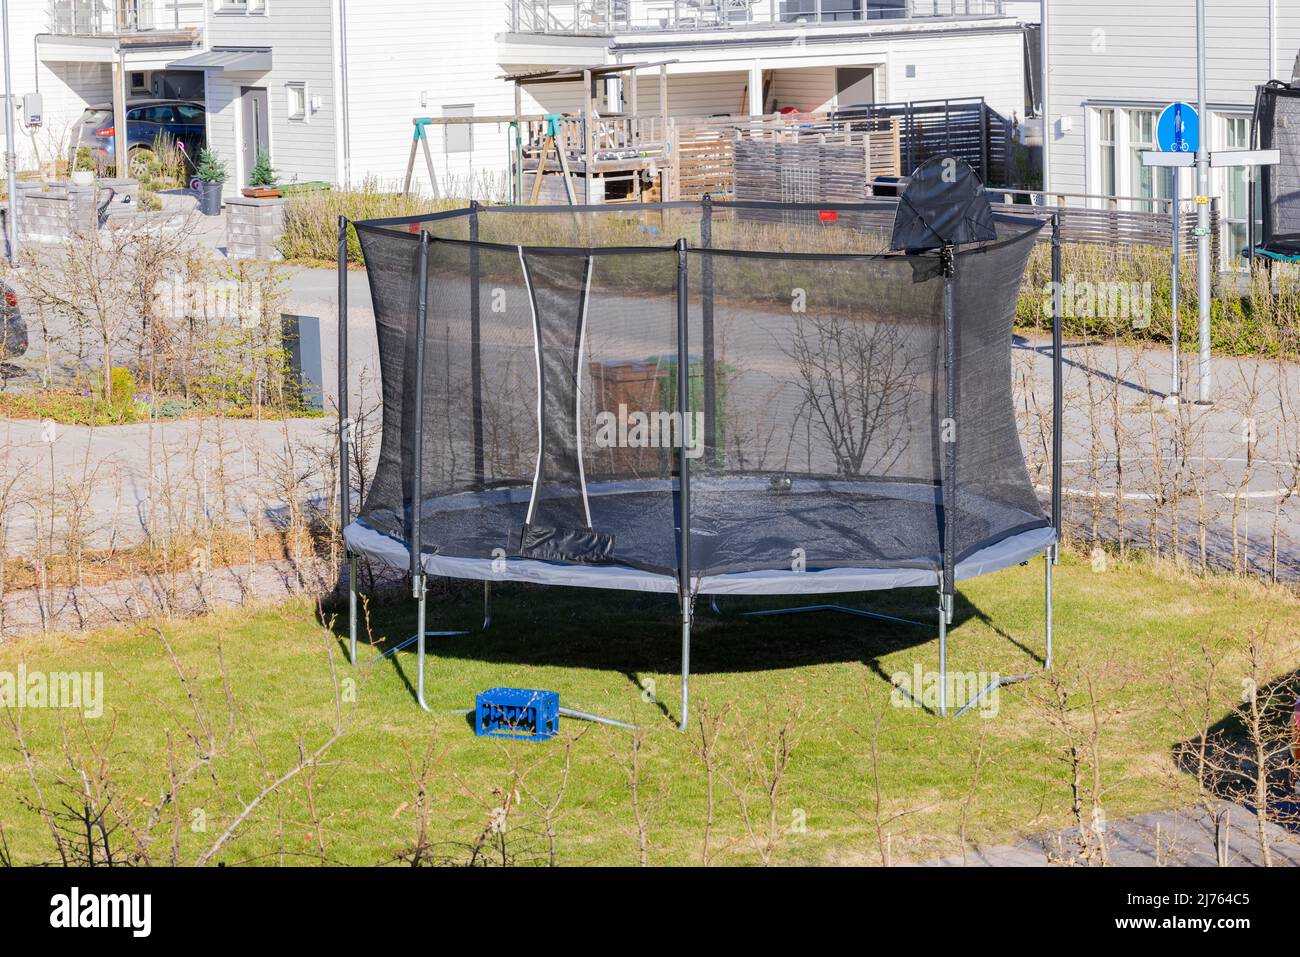 Hermosa vista del trampolín con red protectora instalada en el patio. Concepto de recreación activa. SUECIA. Foto de stock